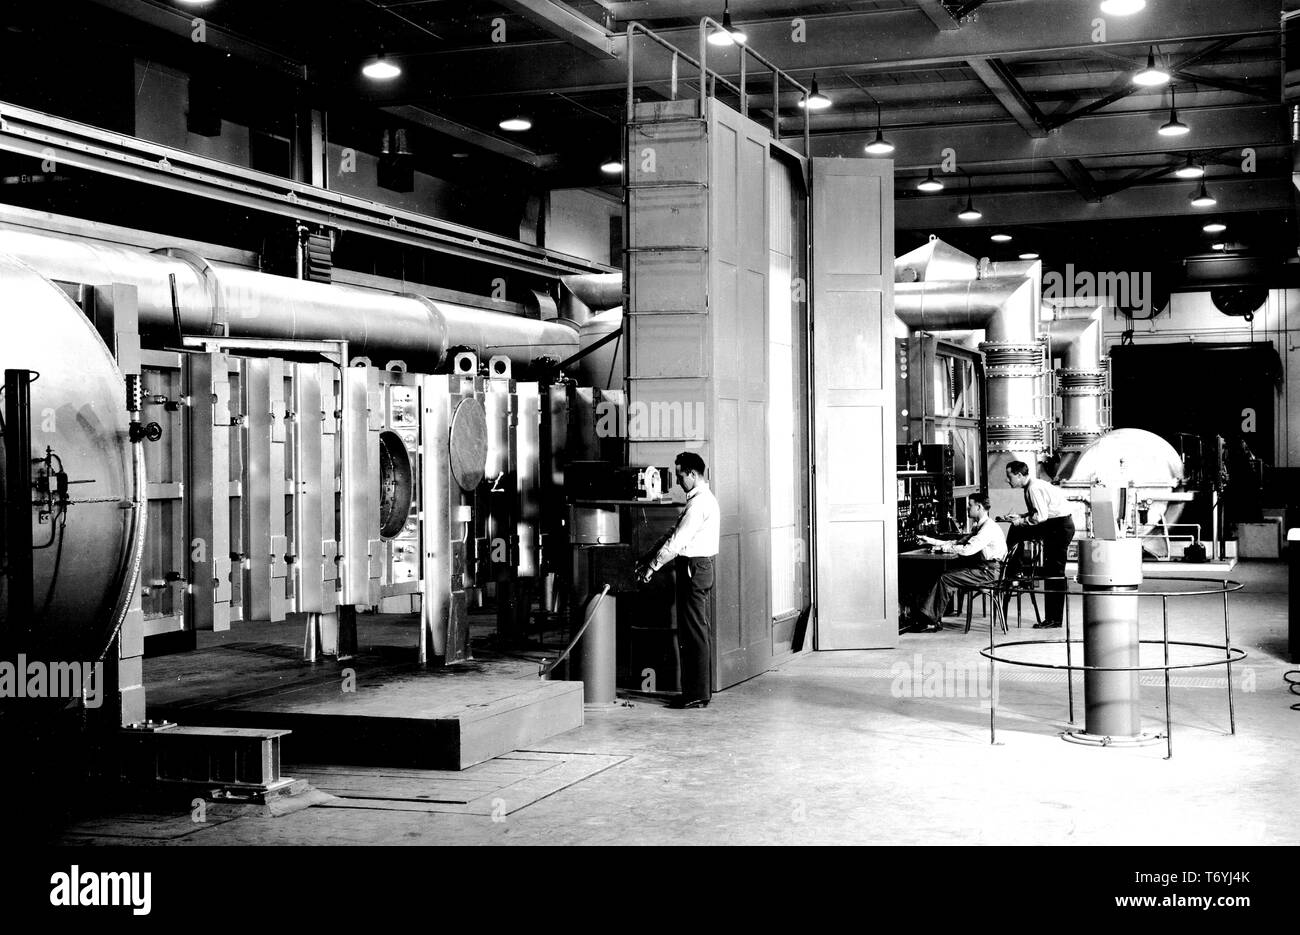 Photographie de l'installation de schlieren dans la soufflerie supersonique à l'aéronautique, Laboratoire Ames NACA Moffett Field, en Californie, le 26 octobre 1945. Droit avec la permission de la National Aeronautics and Space Administration (NASA). () Banque D'Images